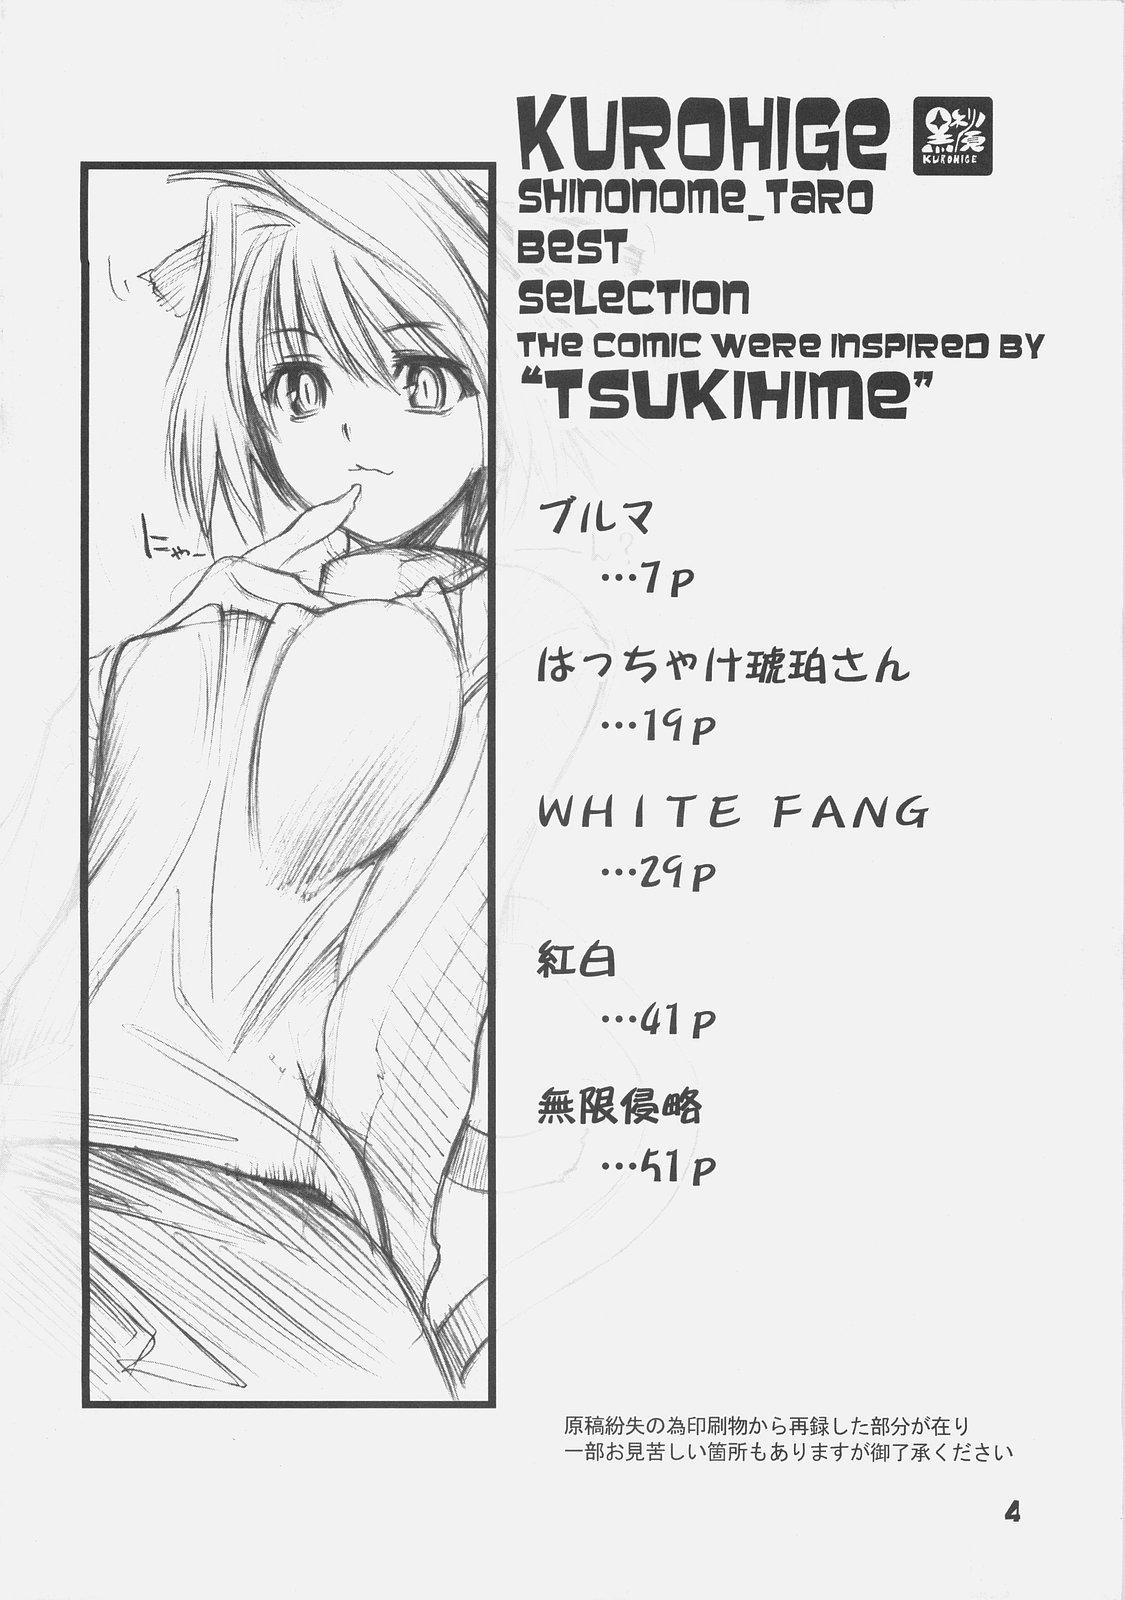 KUROHIGE SHINONOME_TaRO BEST SELECTION "TSUKIHIME" 2